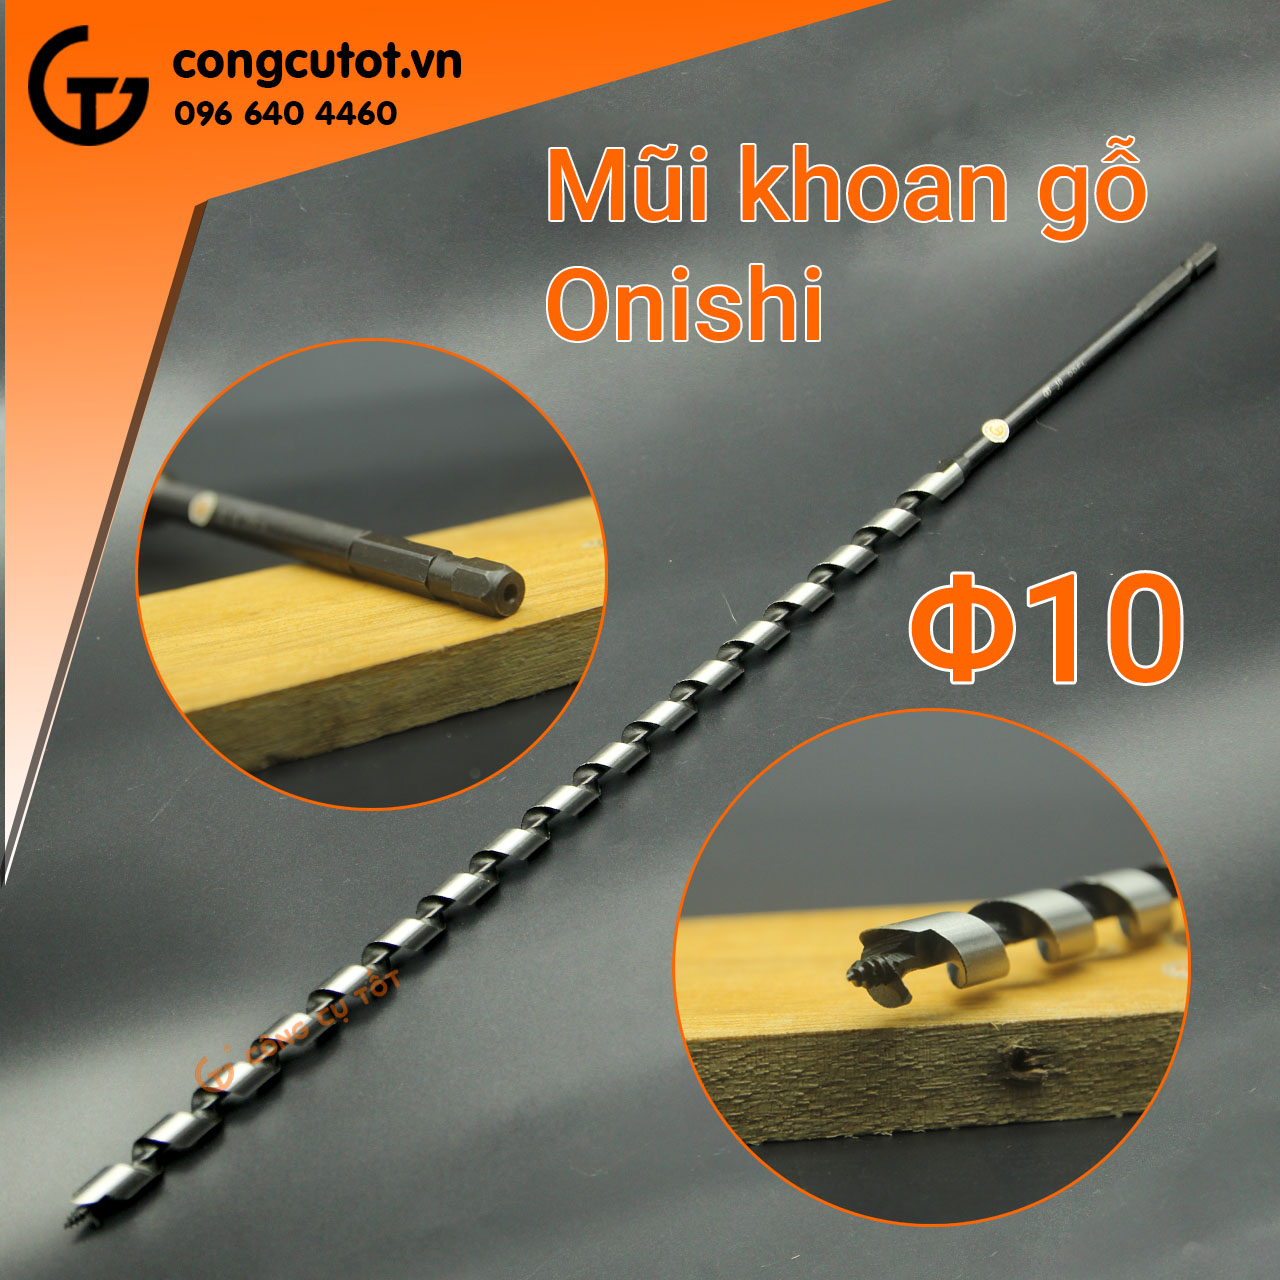 Hình ảnh 1 của mặt hàng Mũi khoan gỗ xoắn ốc Auger Φ10 460mm chuôi lục Onishi Nhật Bản